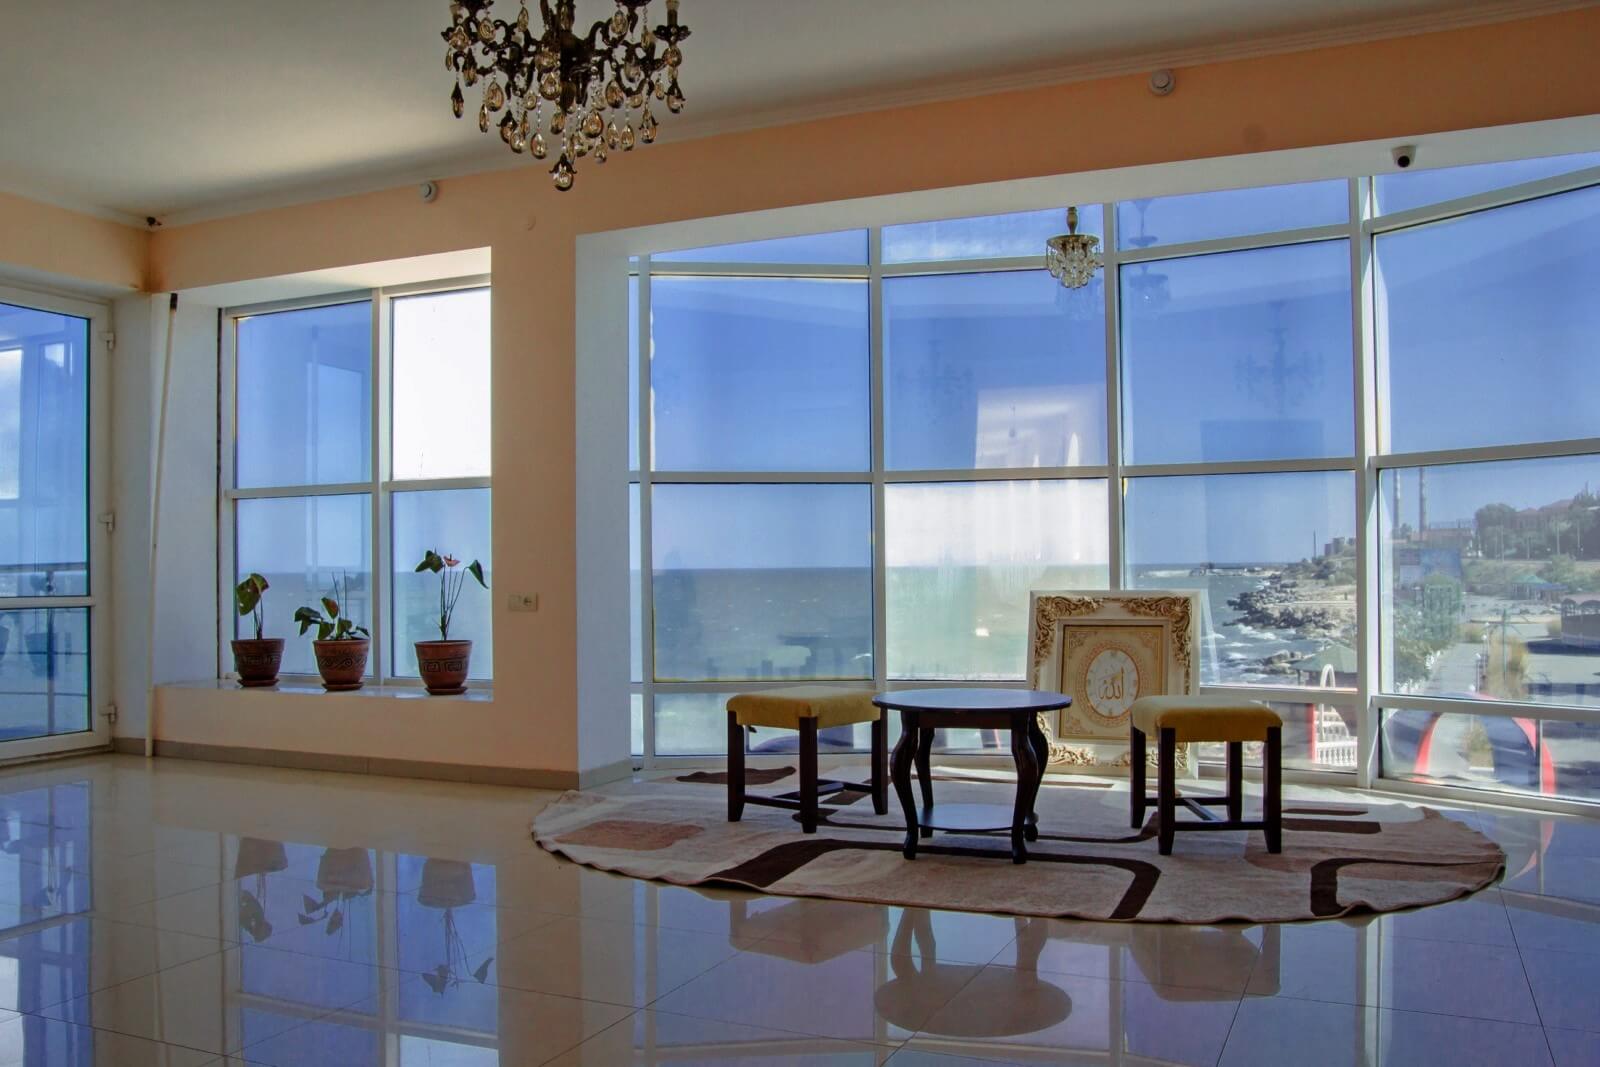 Холл гостиницы - панорамное остекление с видом на берег моря.